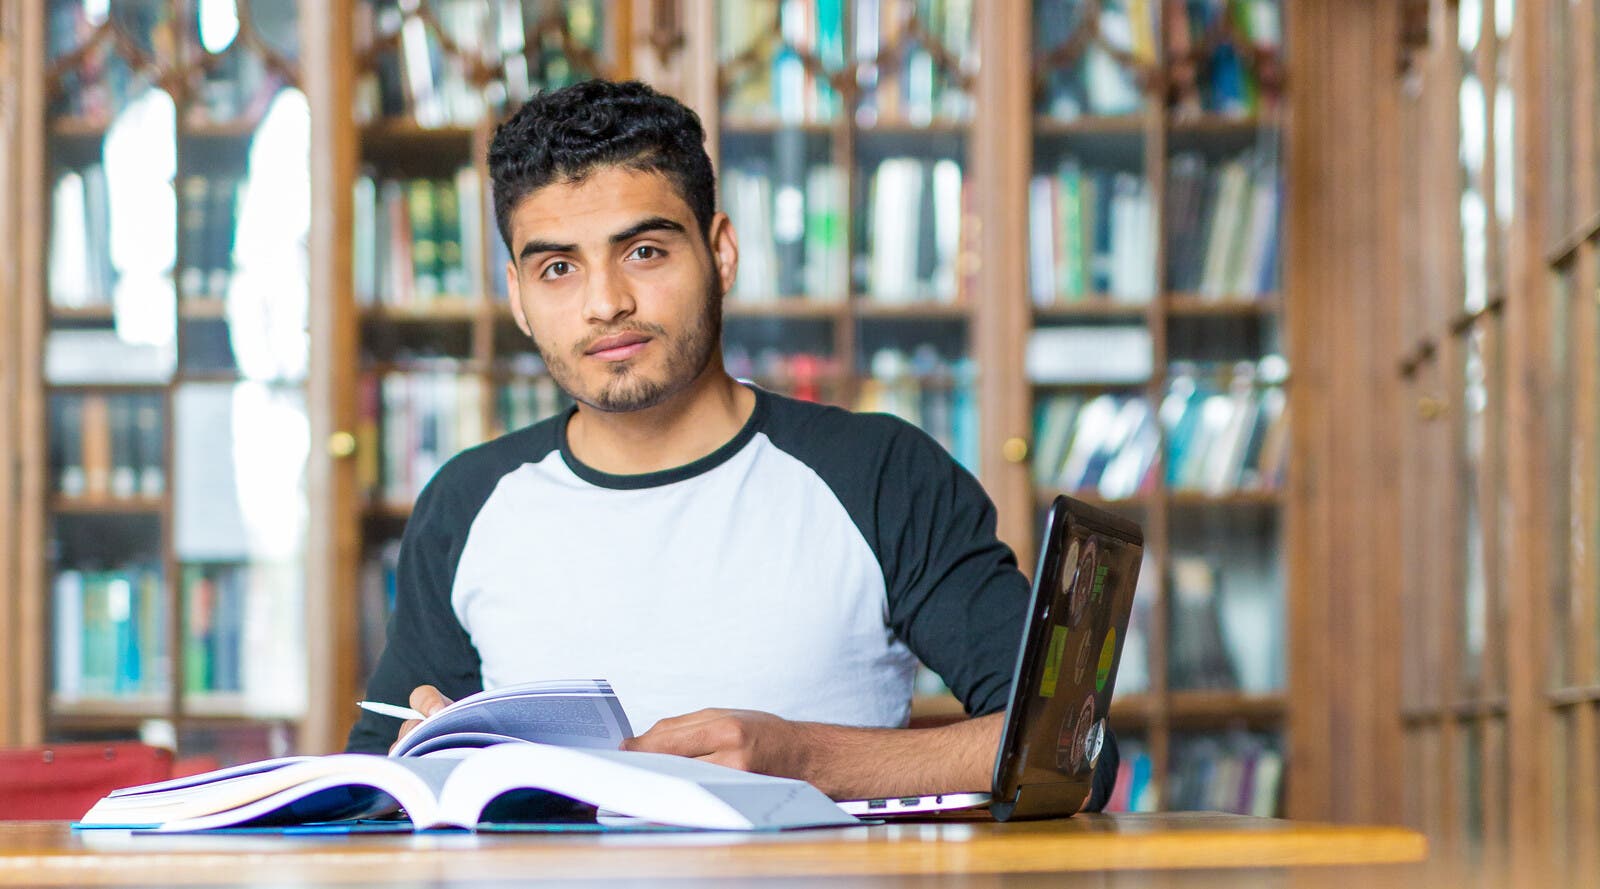 巴基斯坦留学生 Israr 在图书馆里。